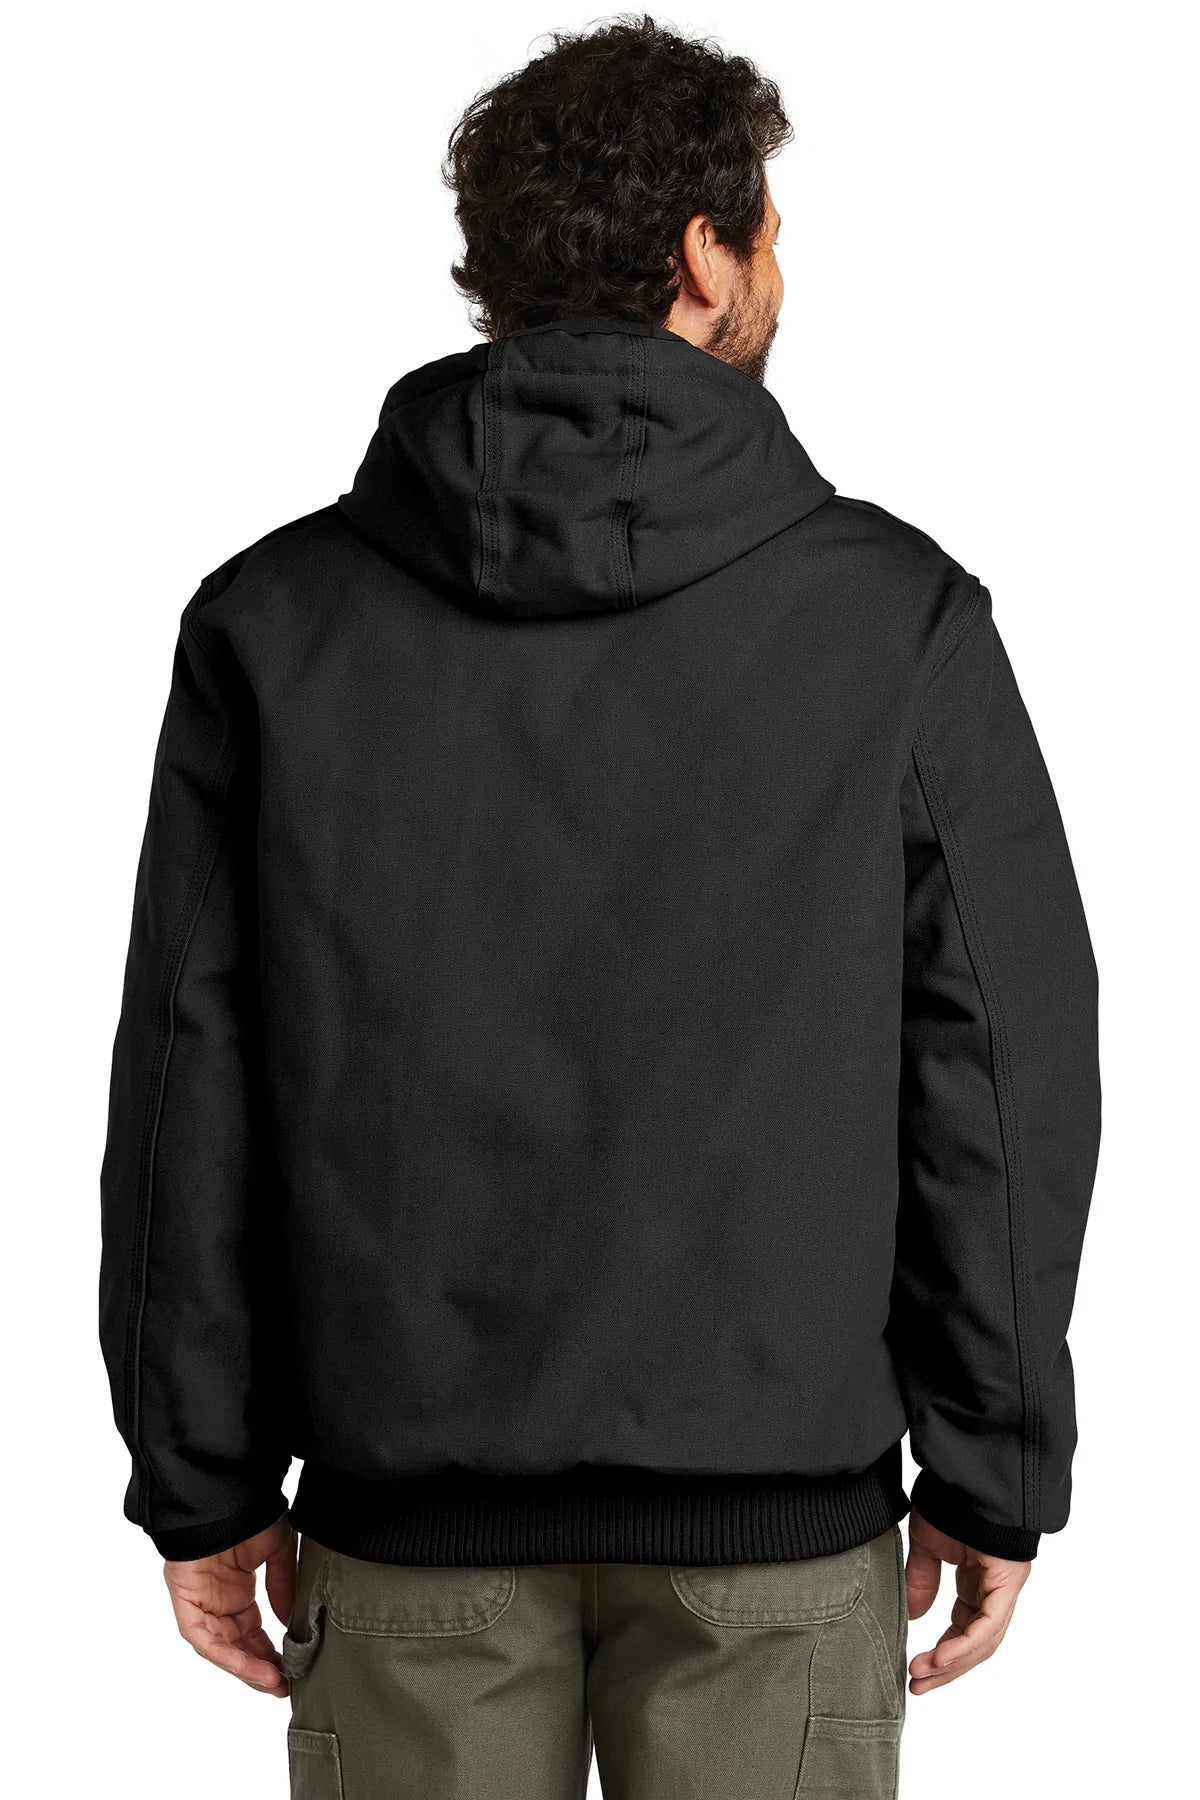 carhartt_ctsj140 _black_company_logo_jackets